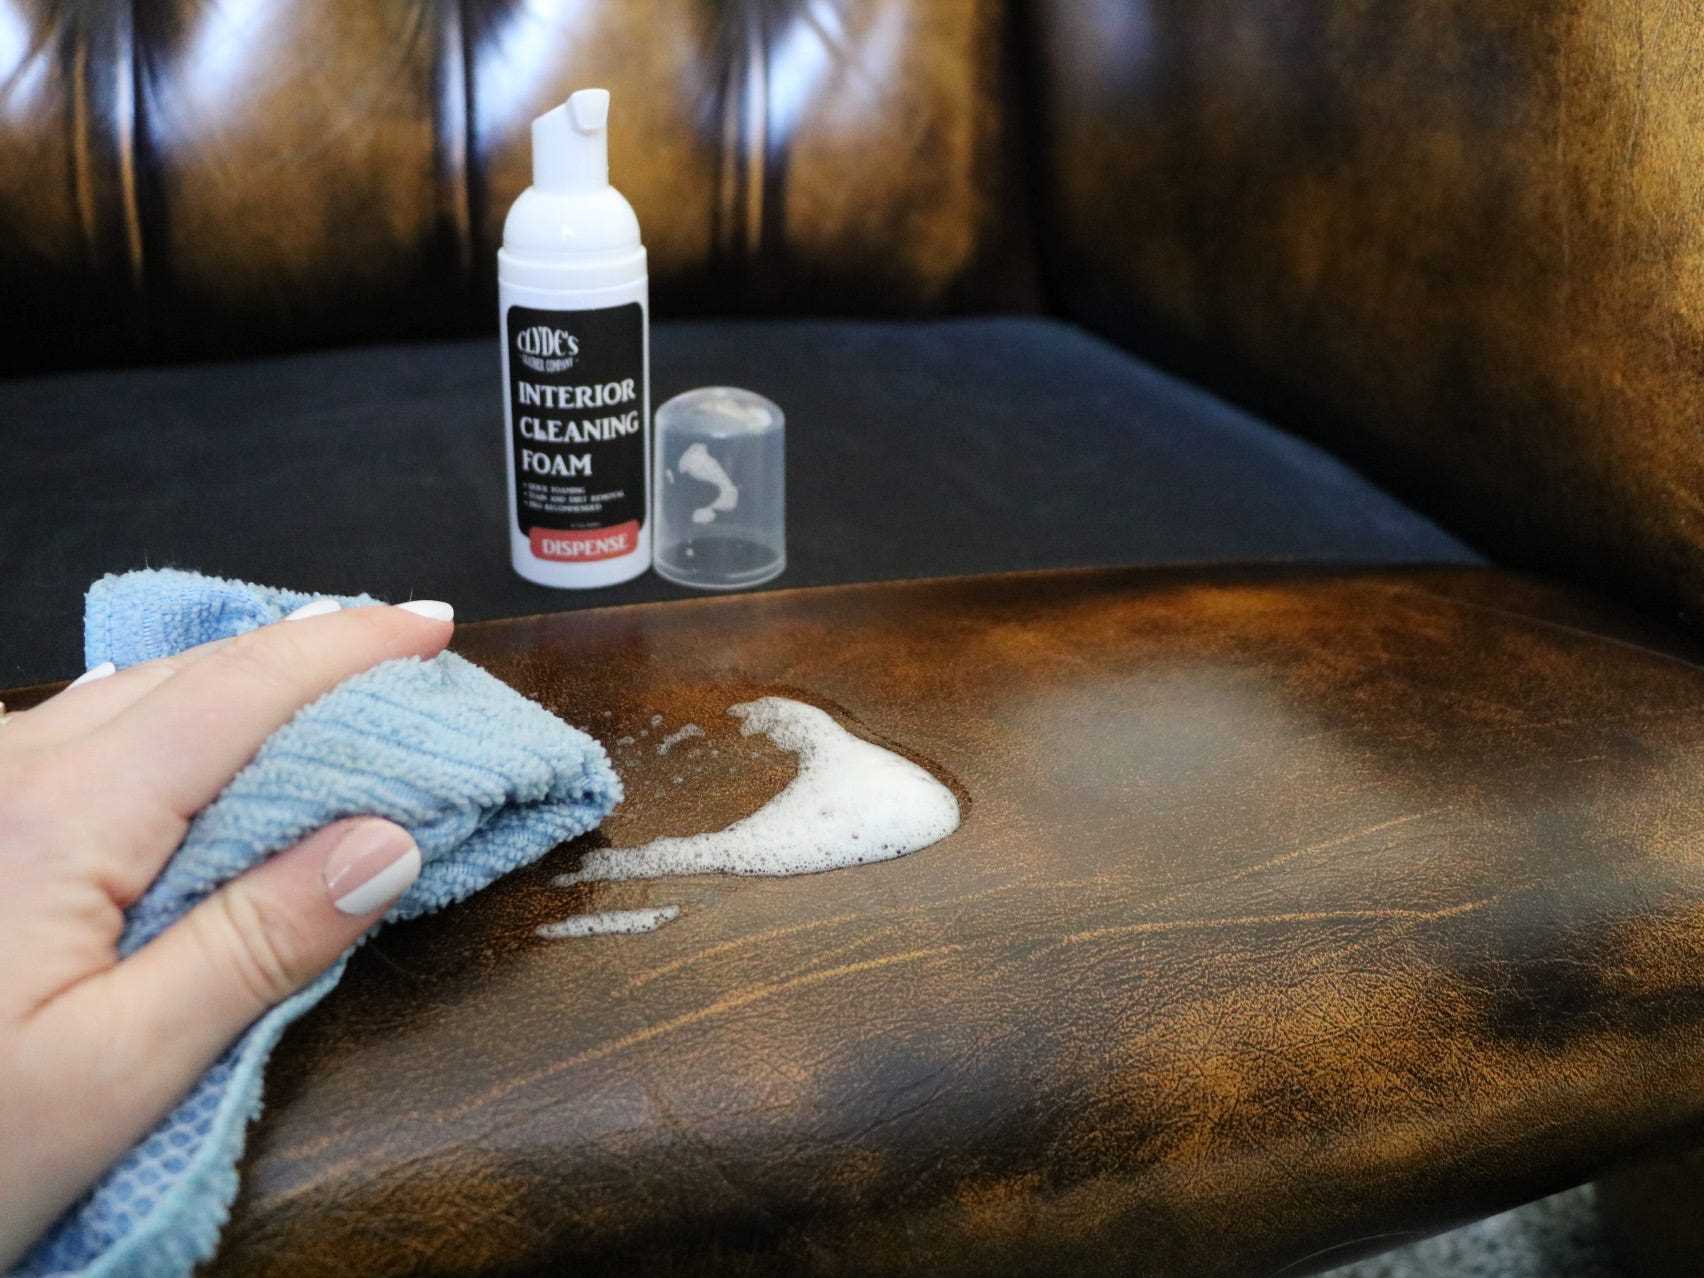 Eine Person, die den Clyde's Leather Interior Cleaning Foam mit einem Tuch auf die Armlehne eines Ledersessels aufträgt.